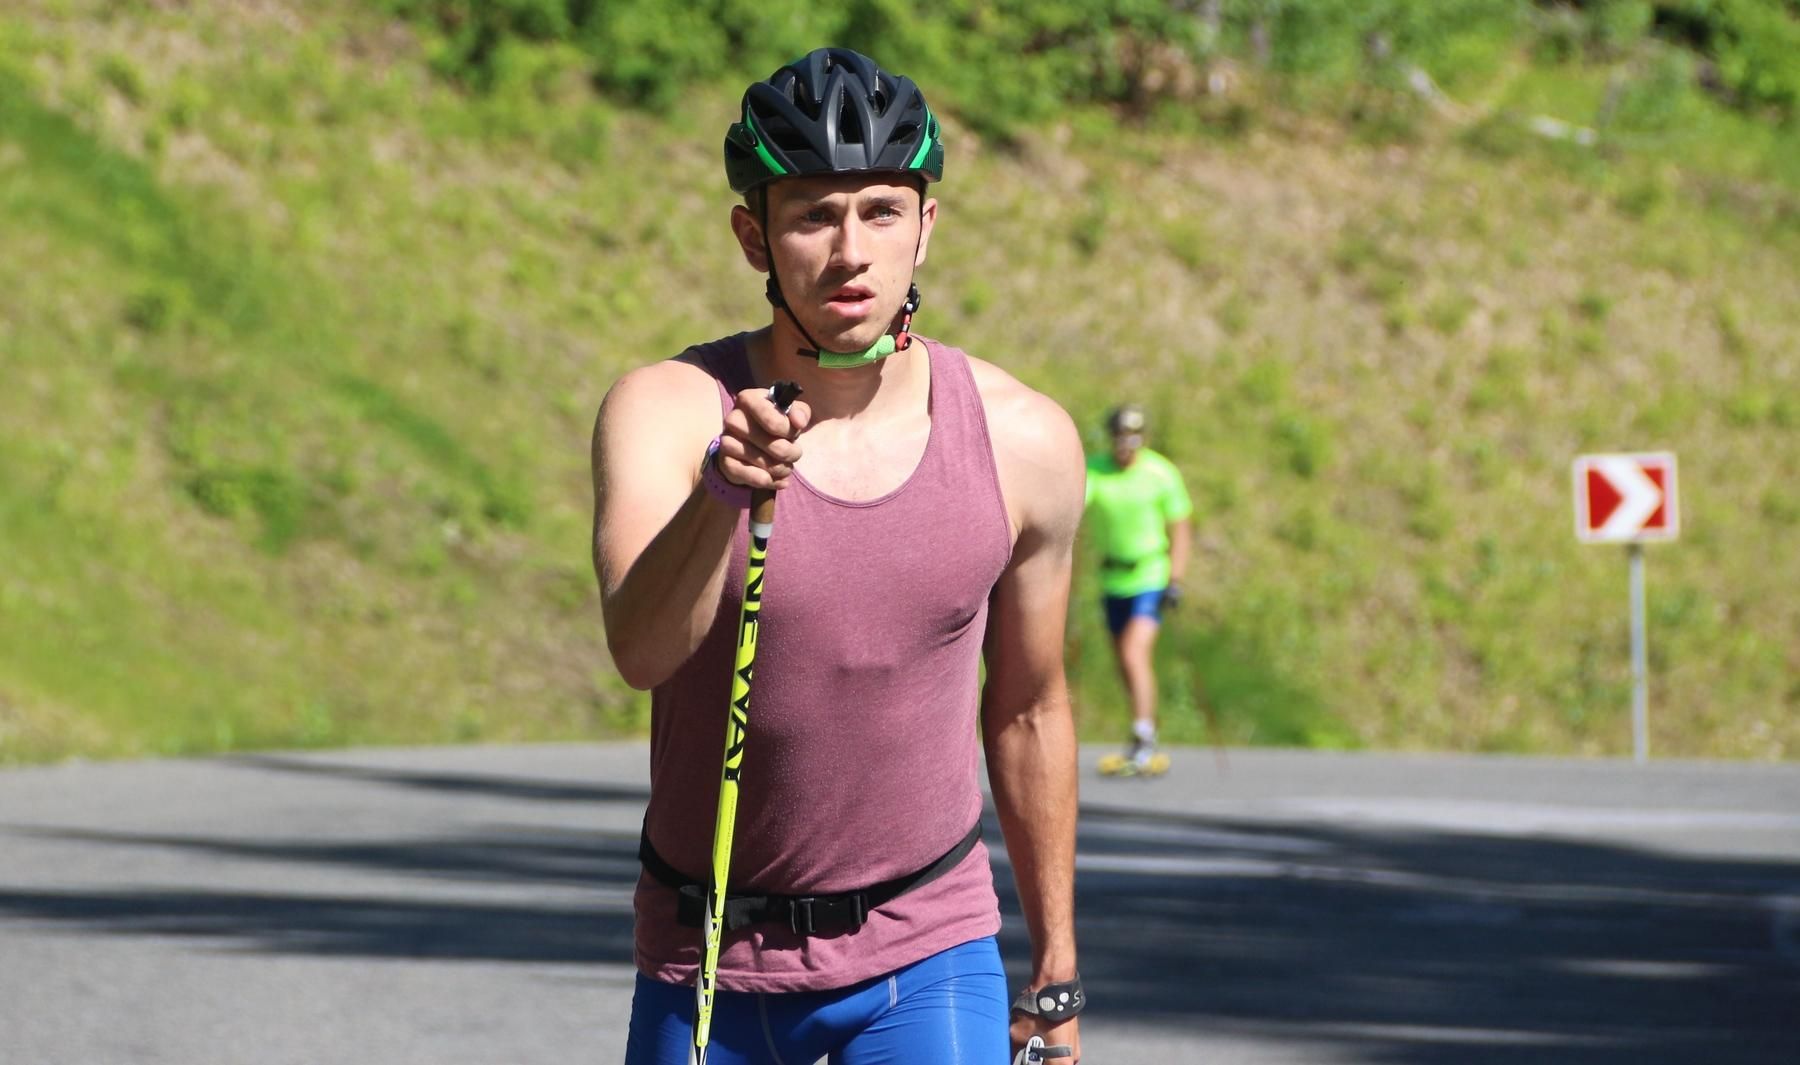 Цимбал выиграл первую медаль для Украины на летнем чемпионате мира по биатлону